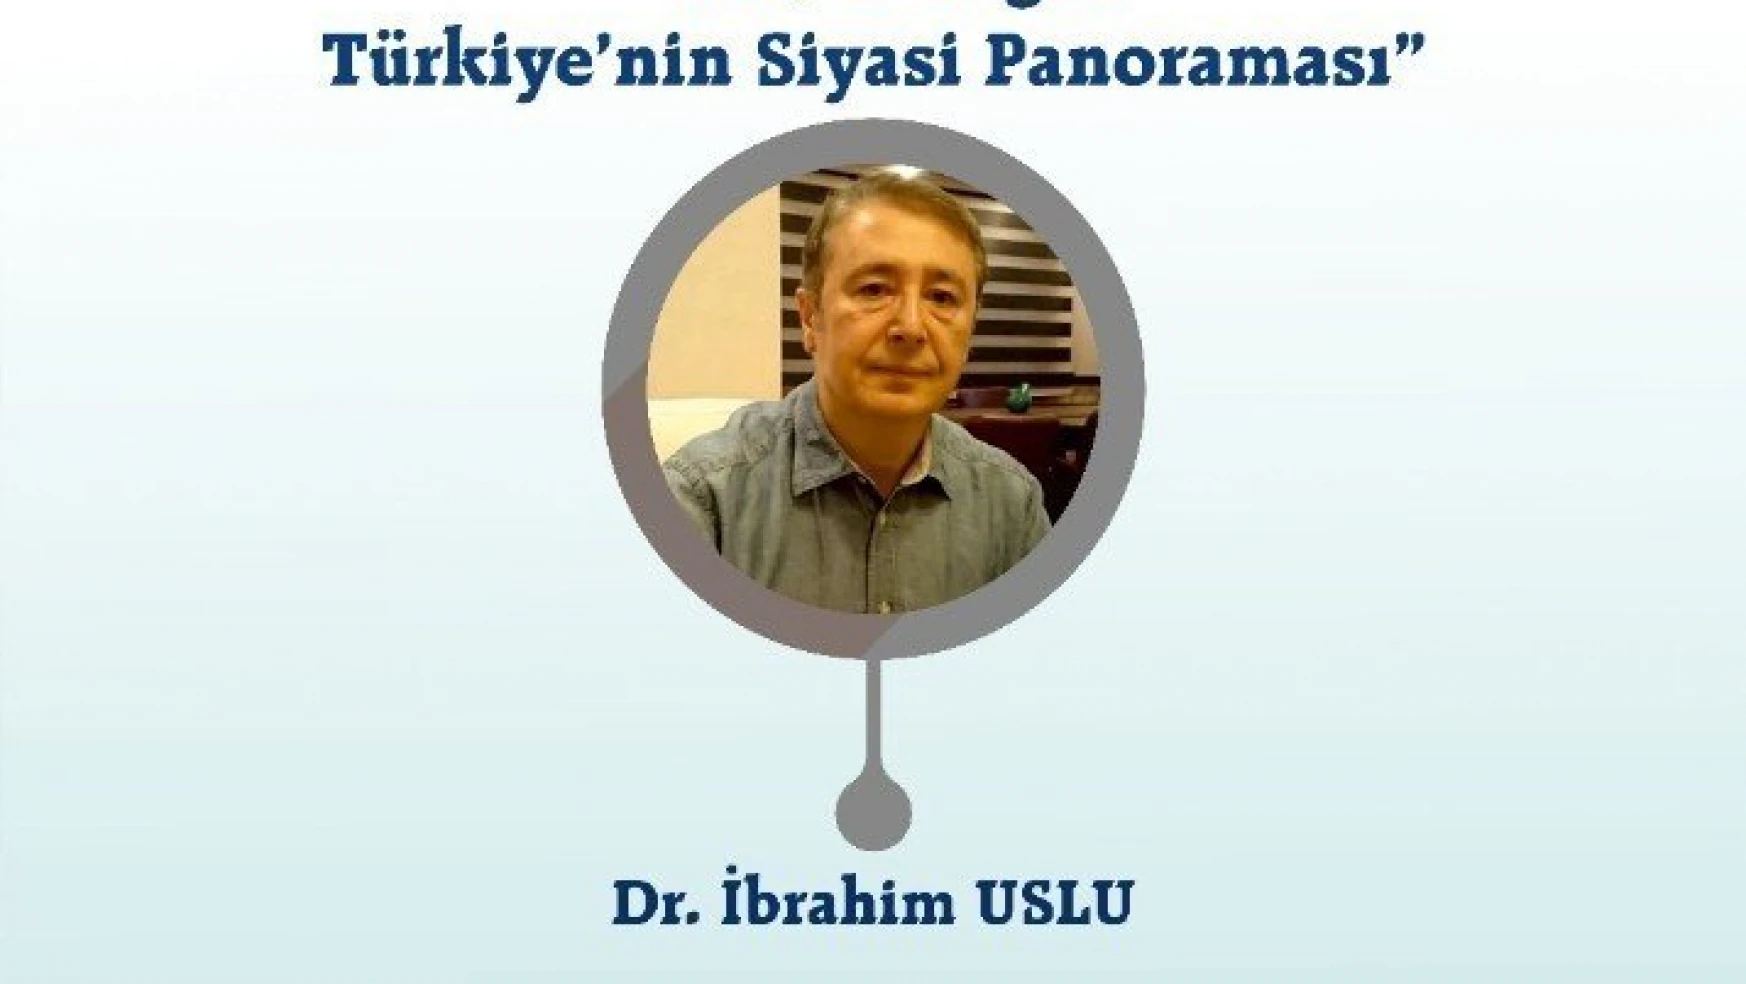 ANAR Genel Müdürü Dr. İbrahim Uslu BİLSAM'ın konuğu olacak
